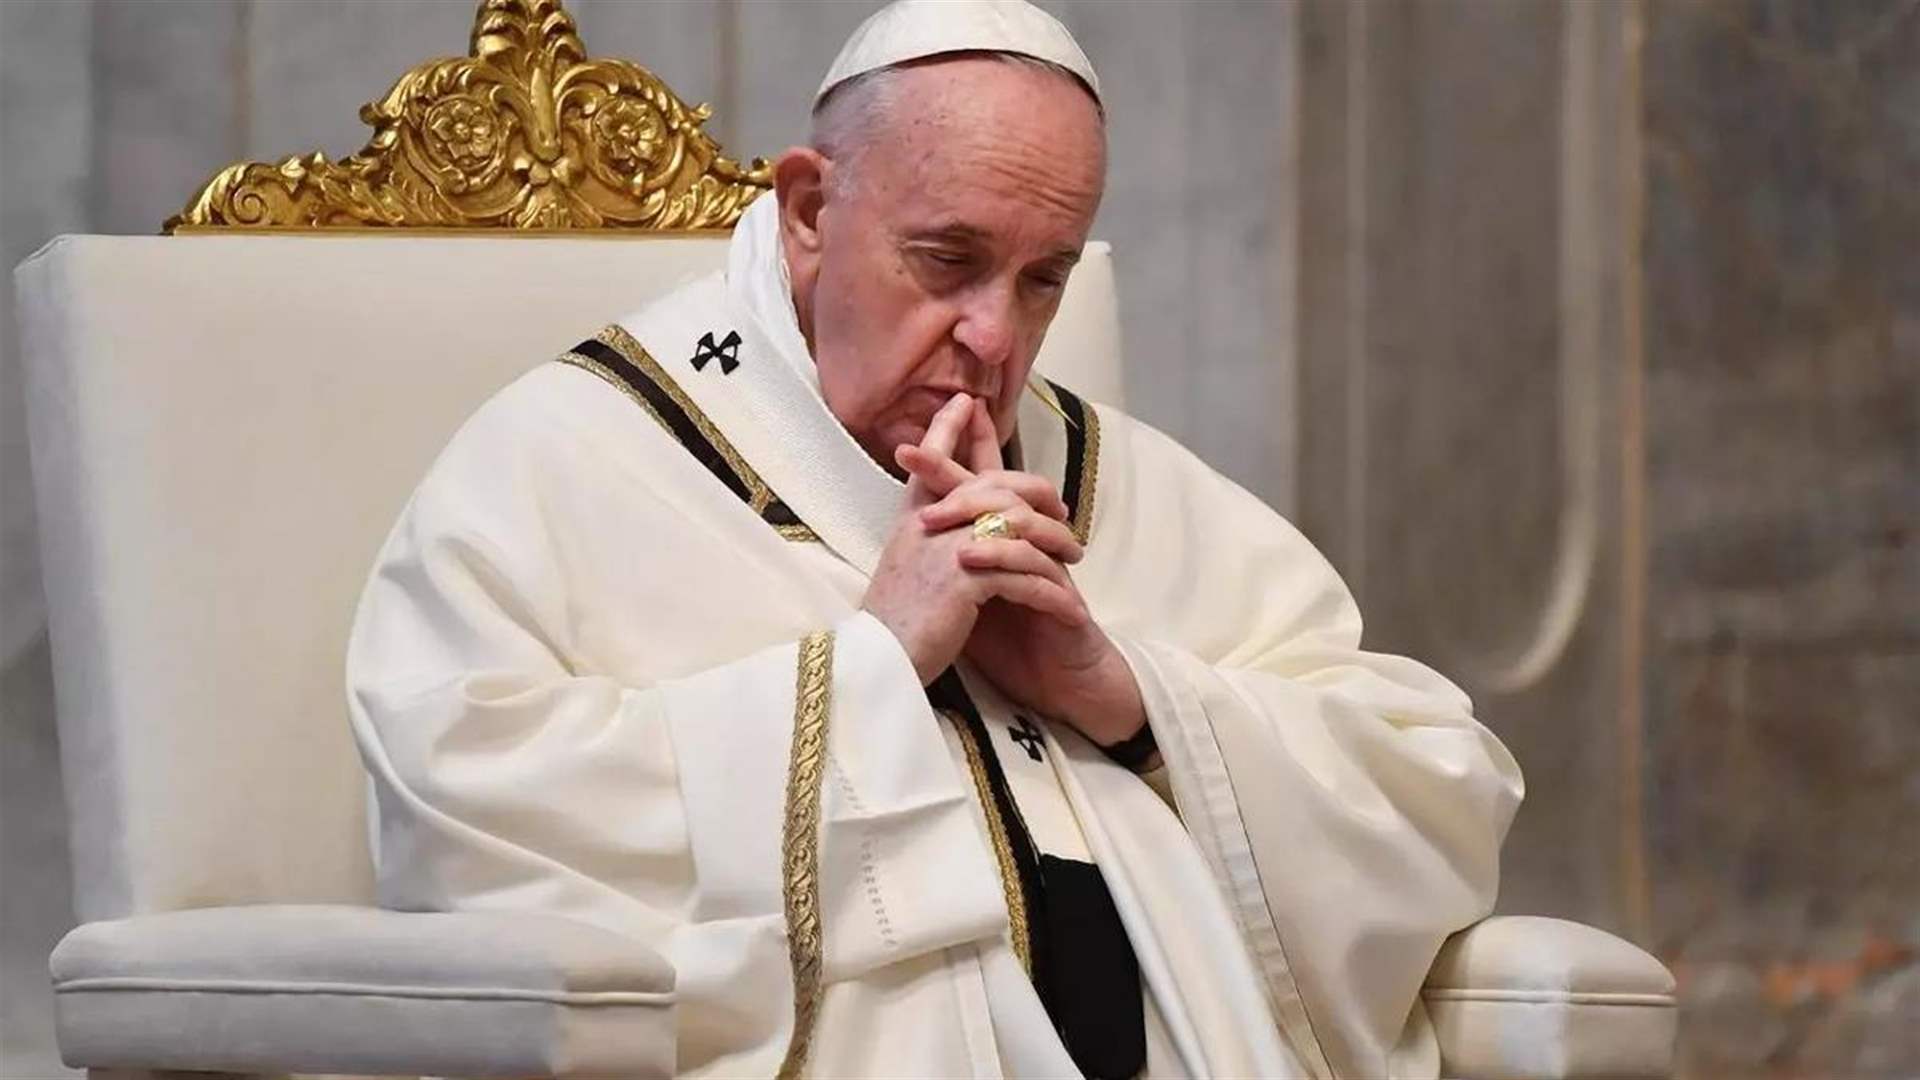 البابا يعرب تضامنه مع الكاثوليك في الأراضي المقدسة: لستم وحدكم